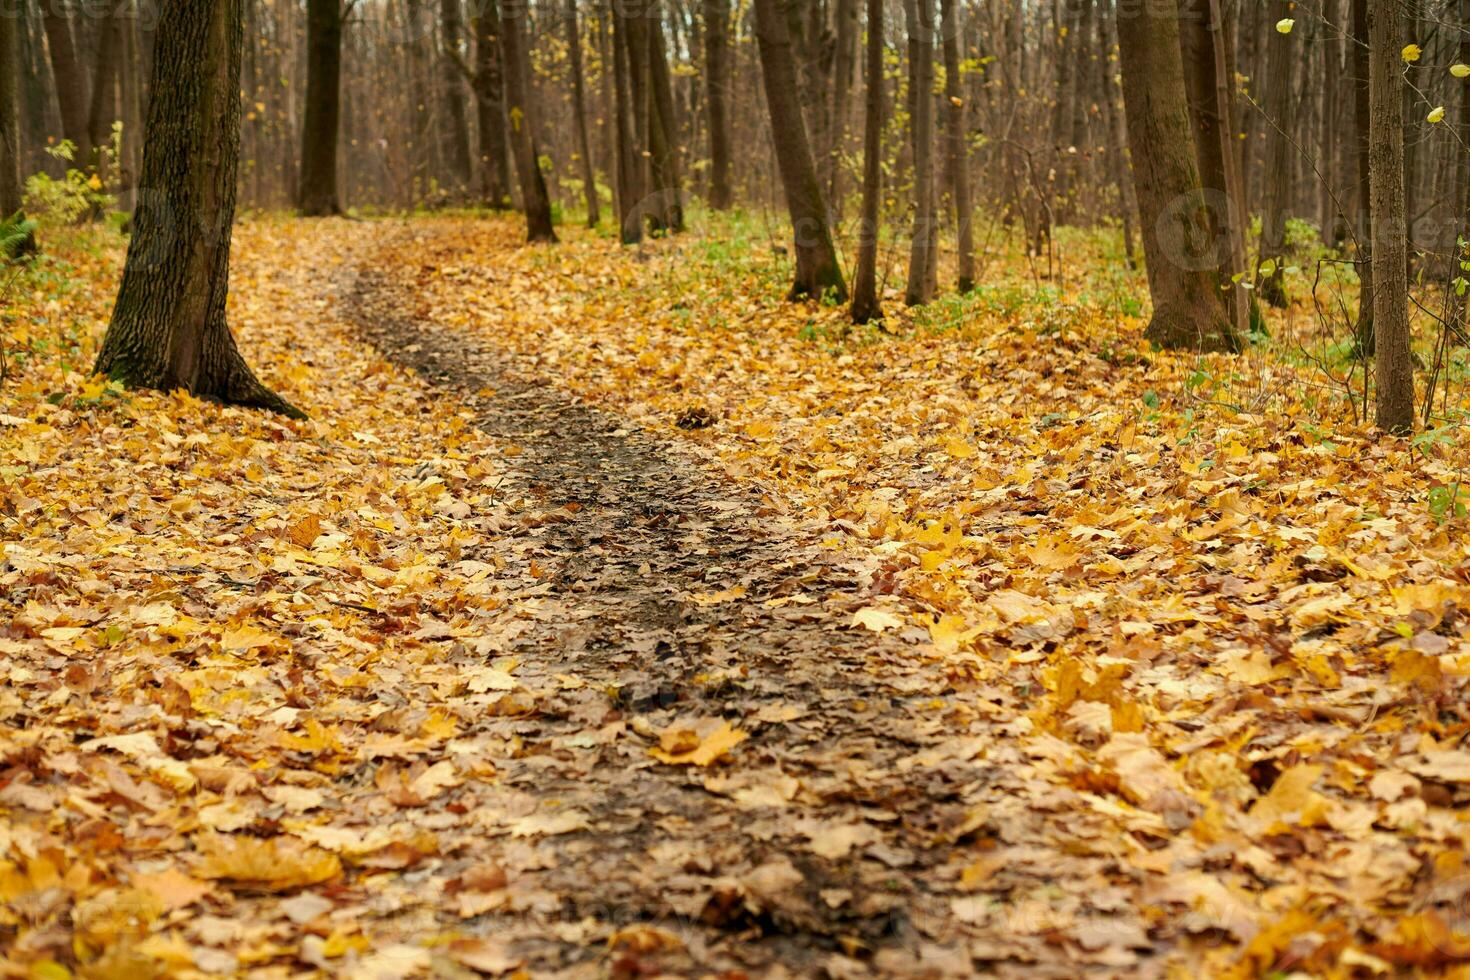 sendero del bosque de otoño con hojas caídas foto